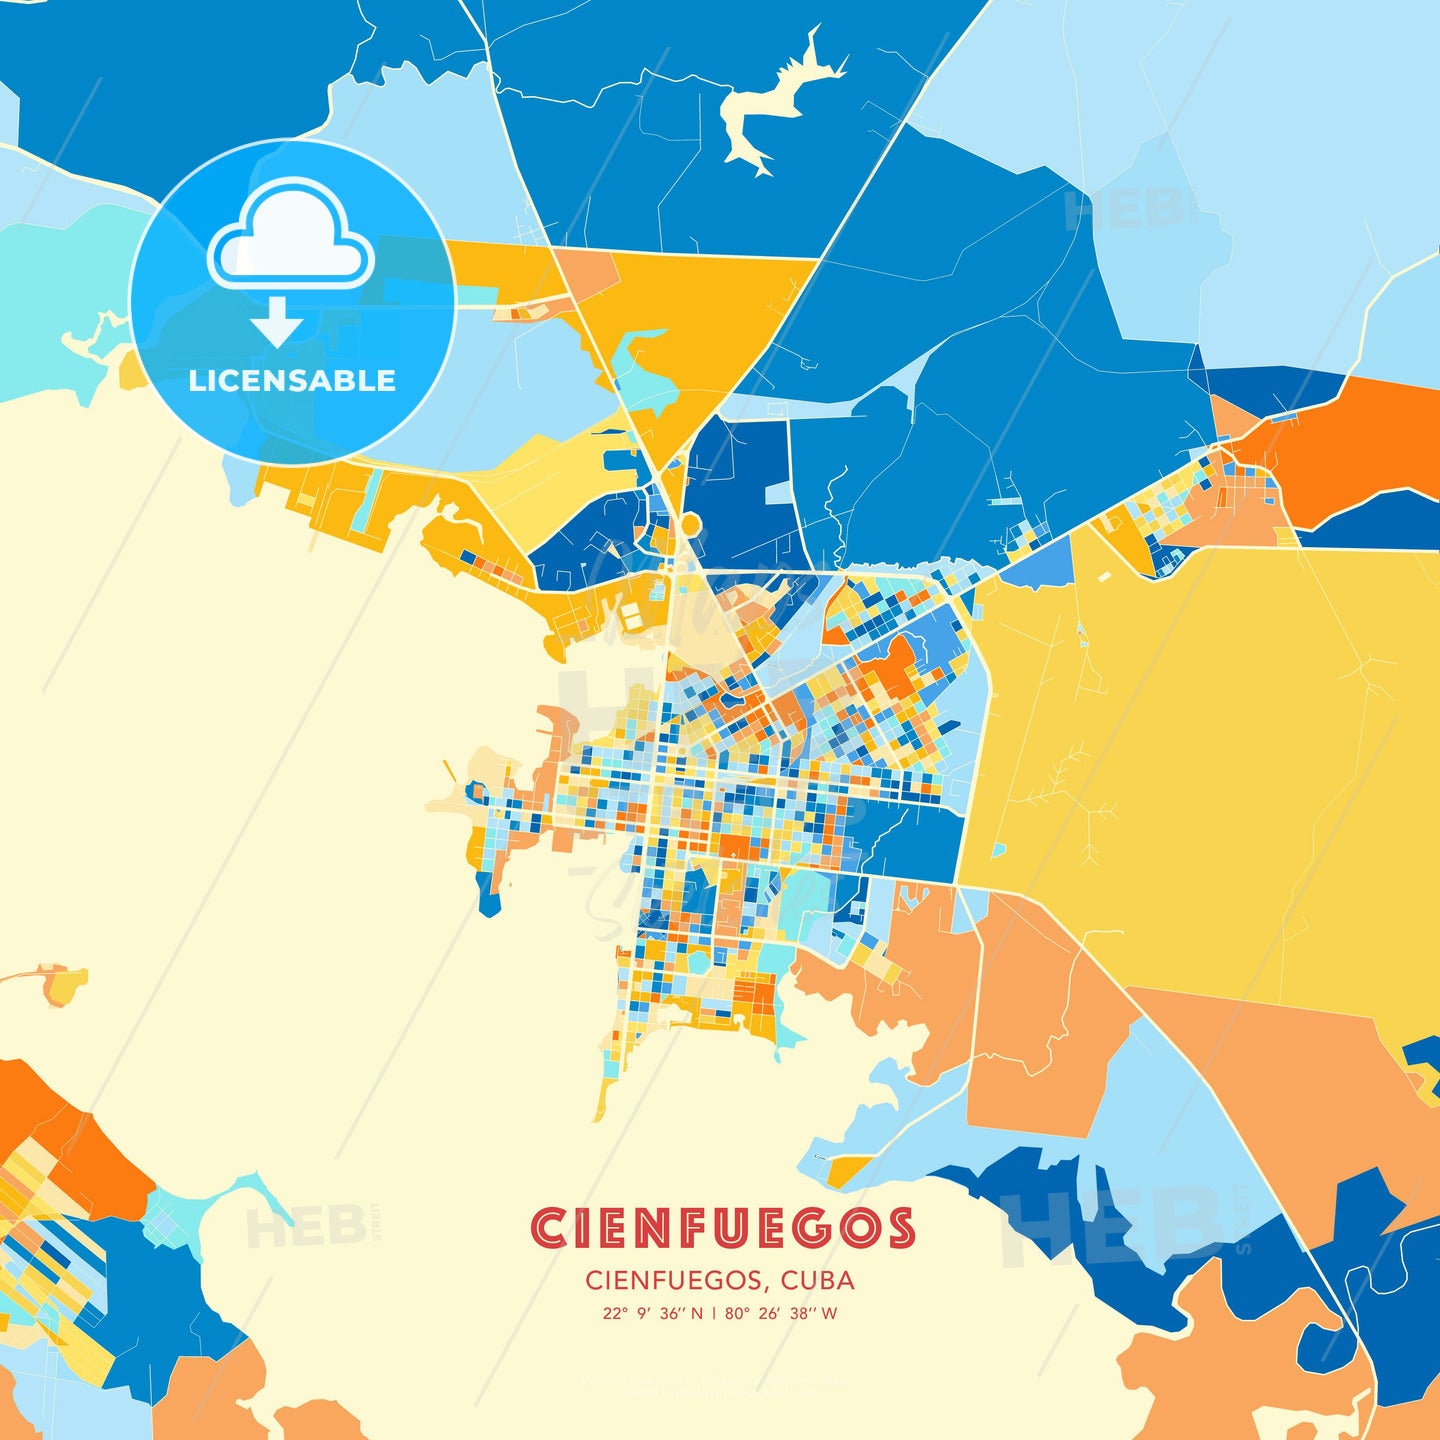 Cienfuegos, Cienfuegos, Cuba, map - HEBSTREITS Sketches